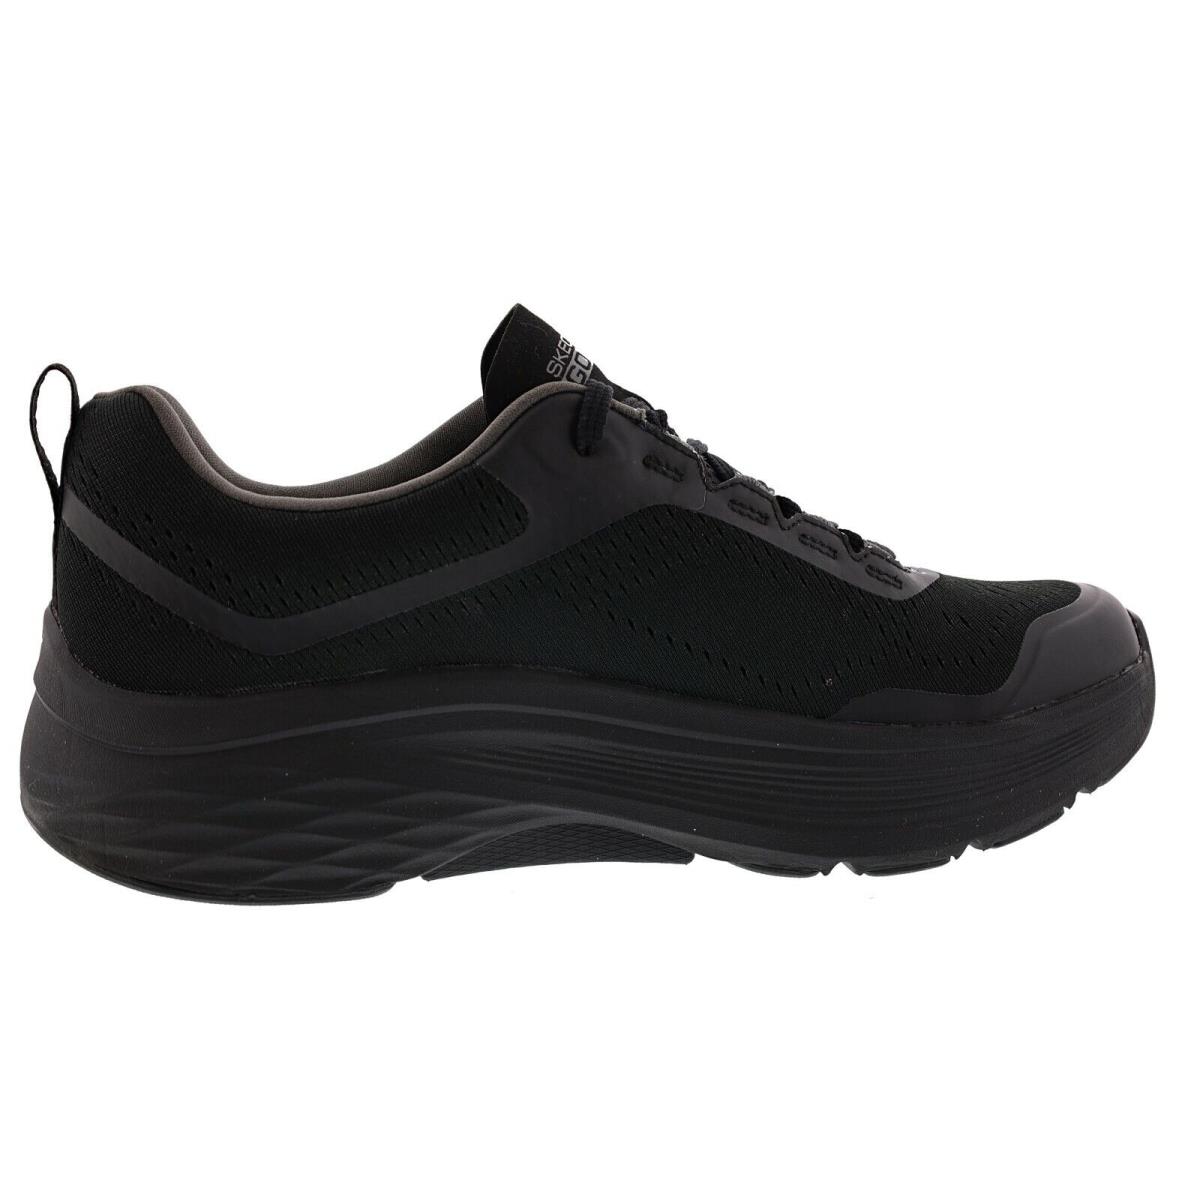 Skechers shoes Arch Fit - BLACK / BLACK 0